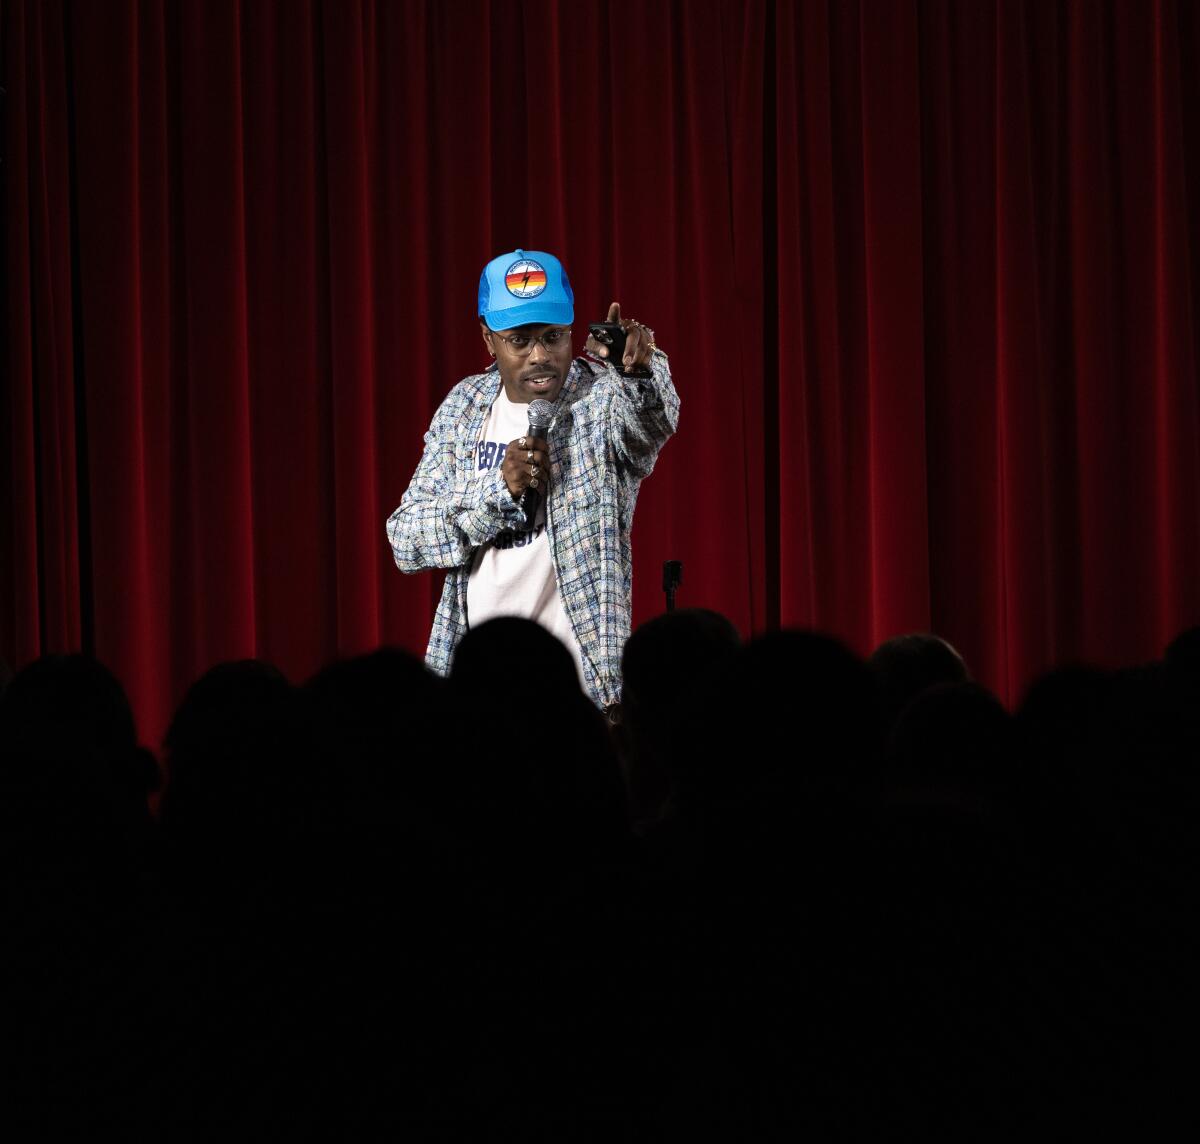 Ein Mann mit blauer Baseballkappe auf der Bühne hält mit einer Hand ein Mikrofon und gestikuliert mit der anderen